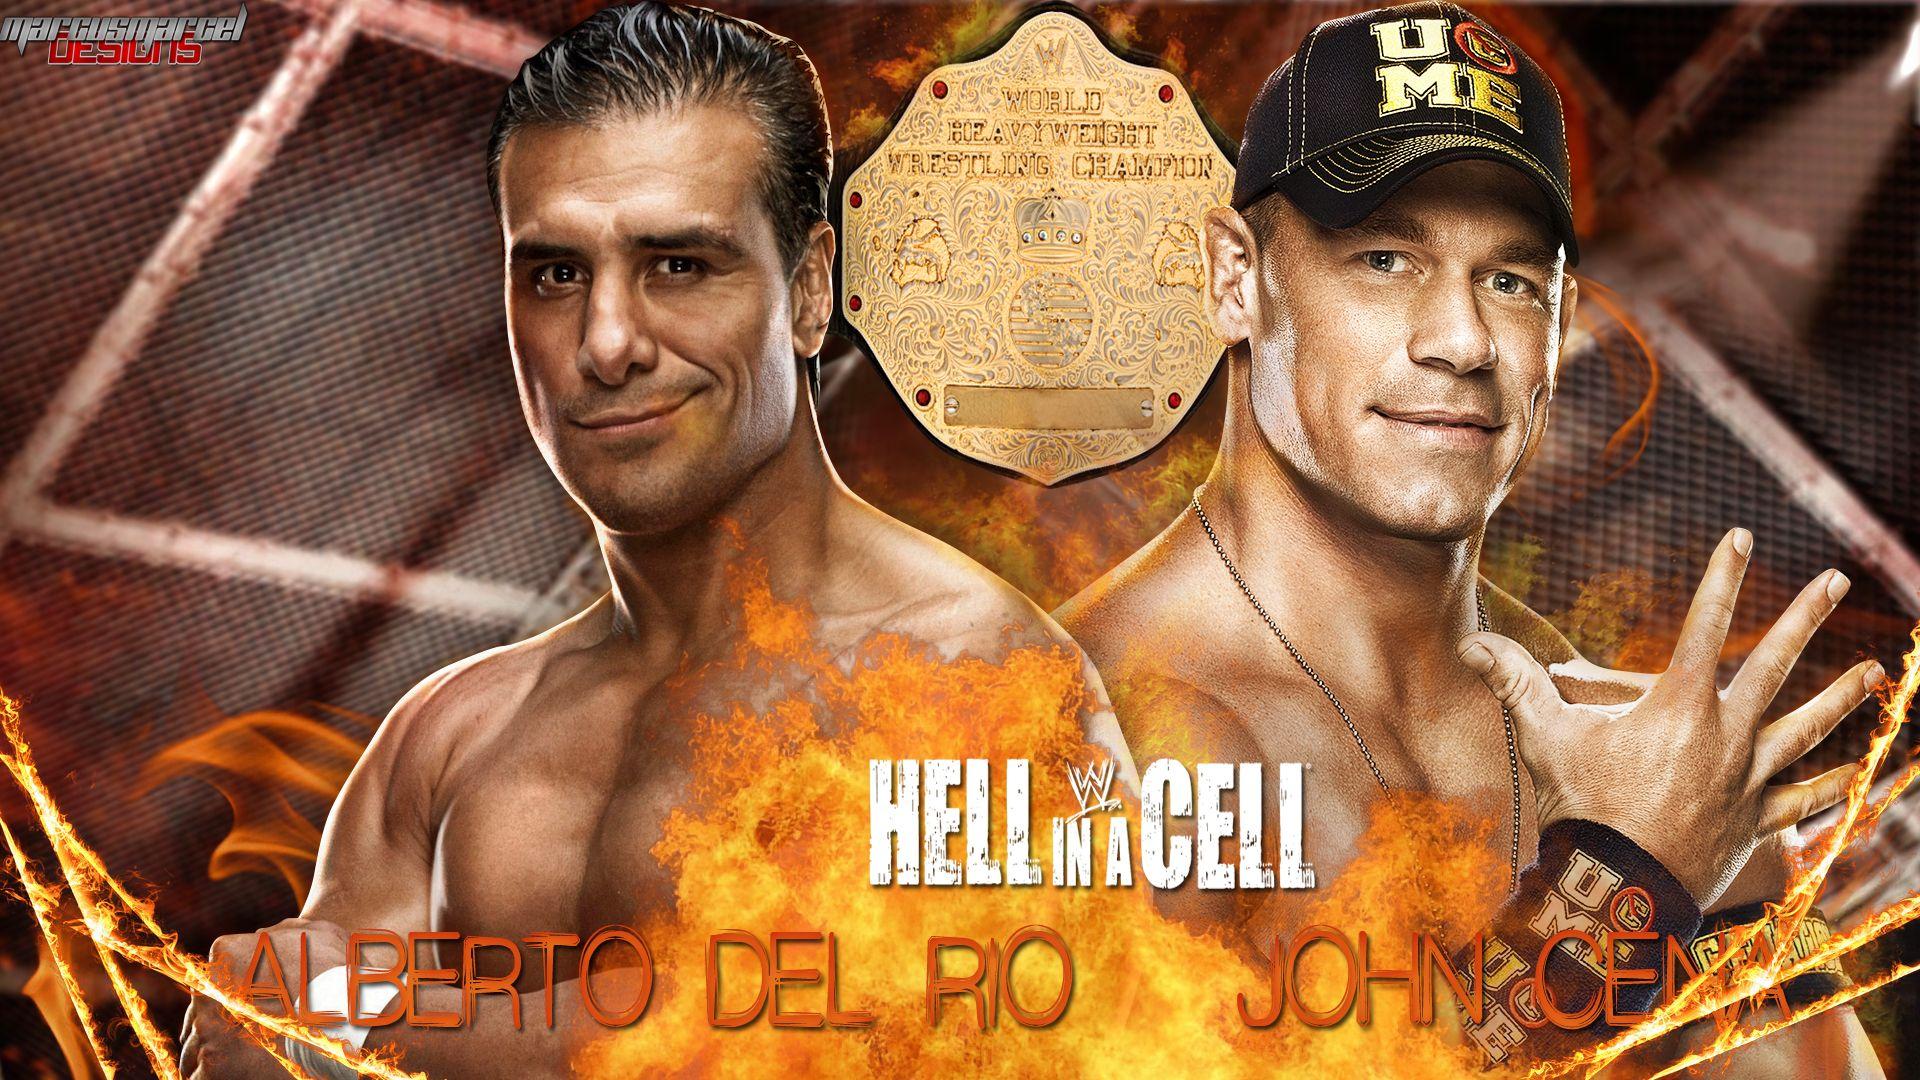 WWE HIAC, Alberto Del Rio vs John Cena Wallpaper